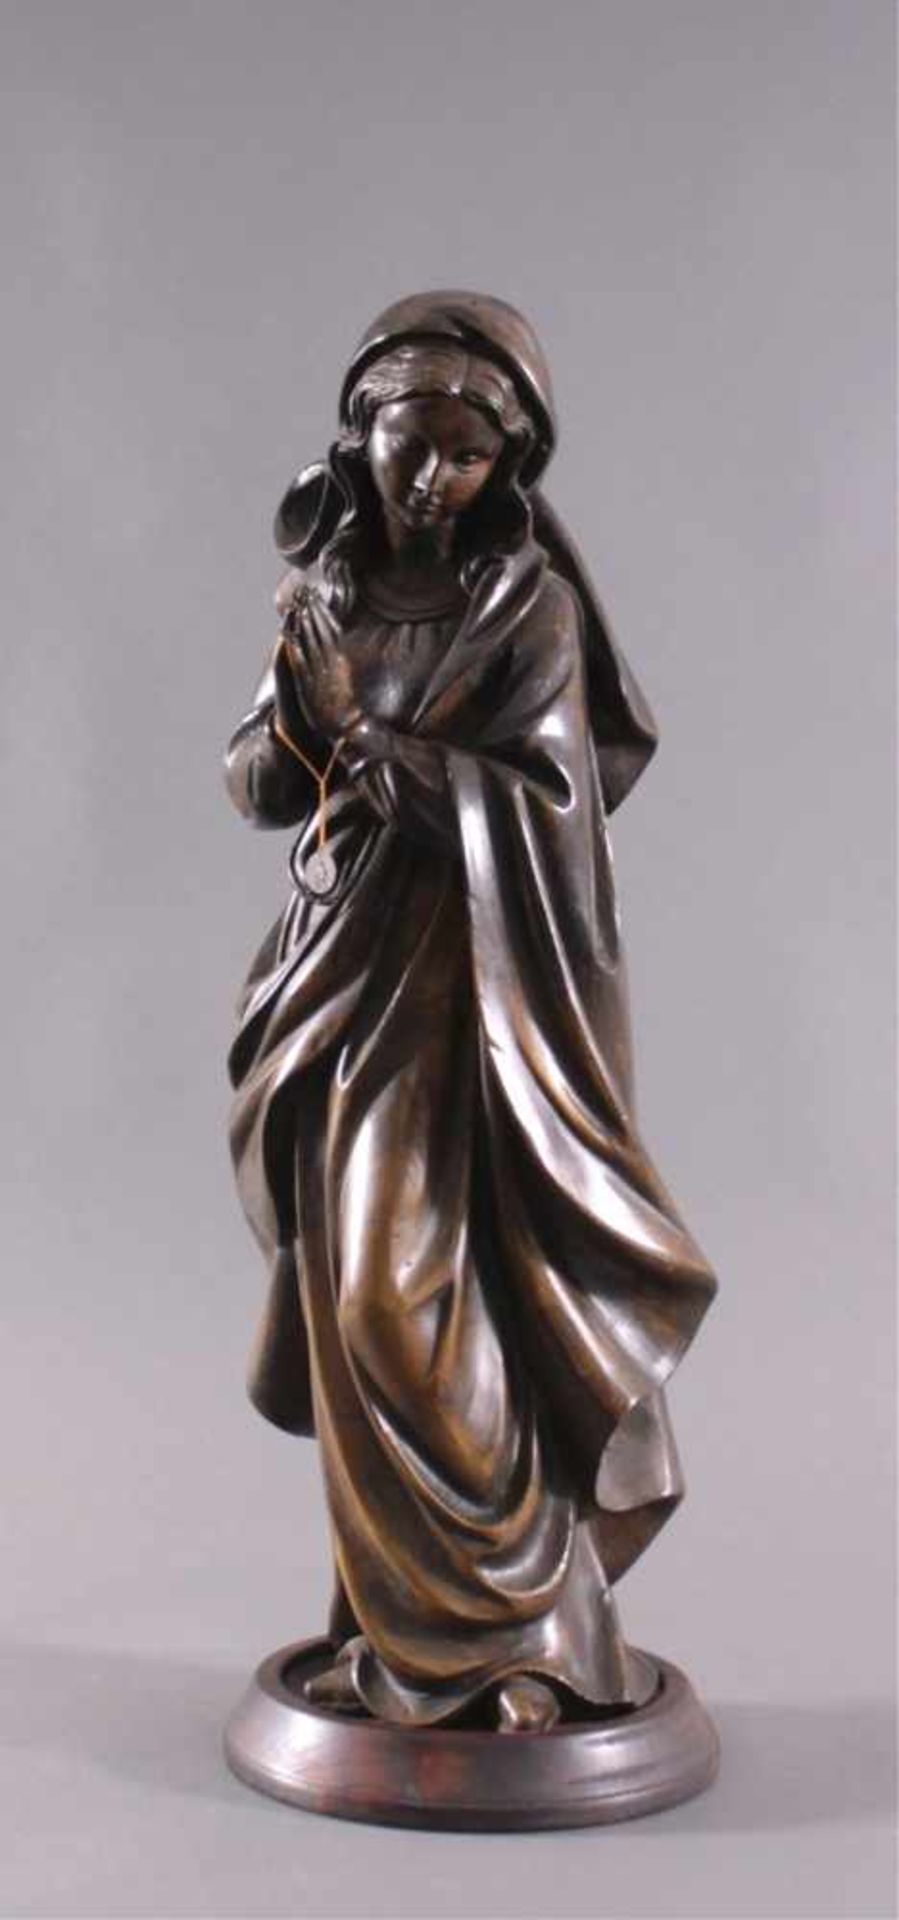 Bronzeplastik, "Heilige Theresia", 20. JahrhundetsStehende Heilige auf Holzsockel, Bronze